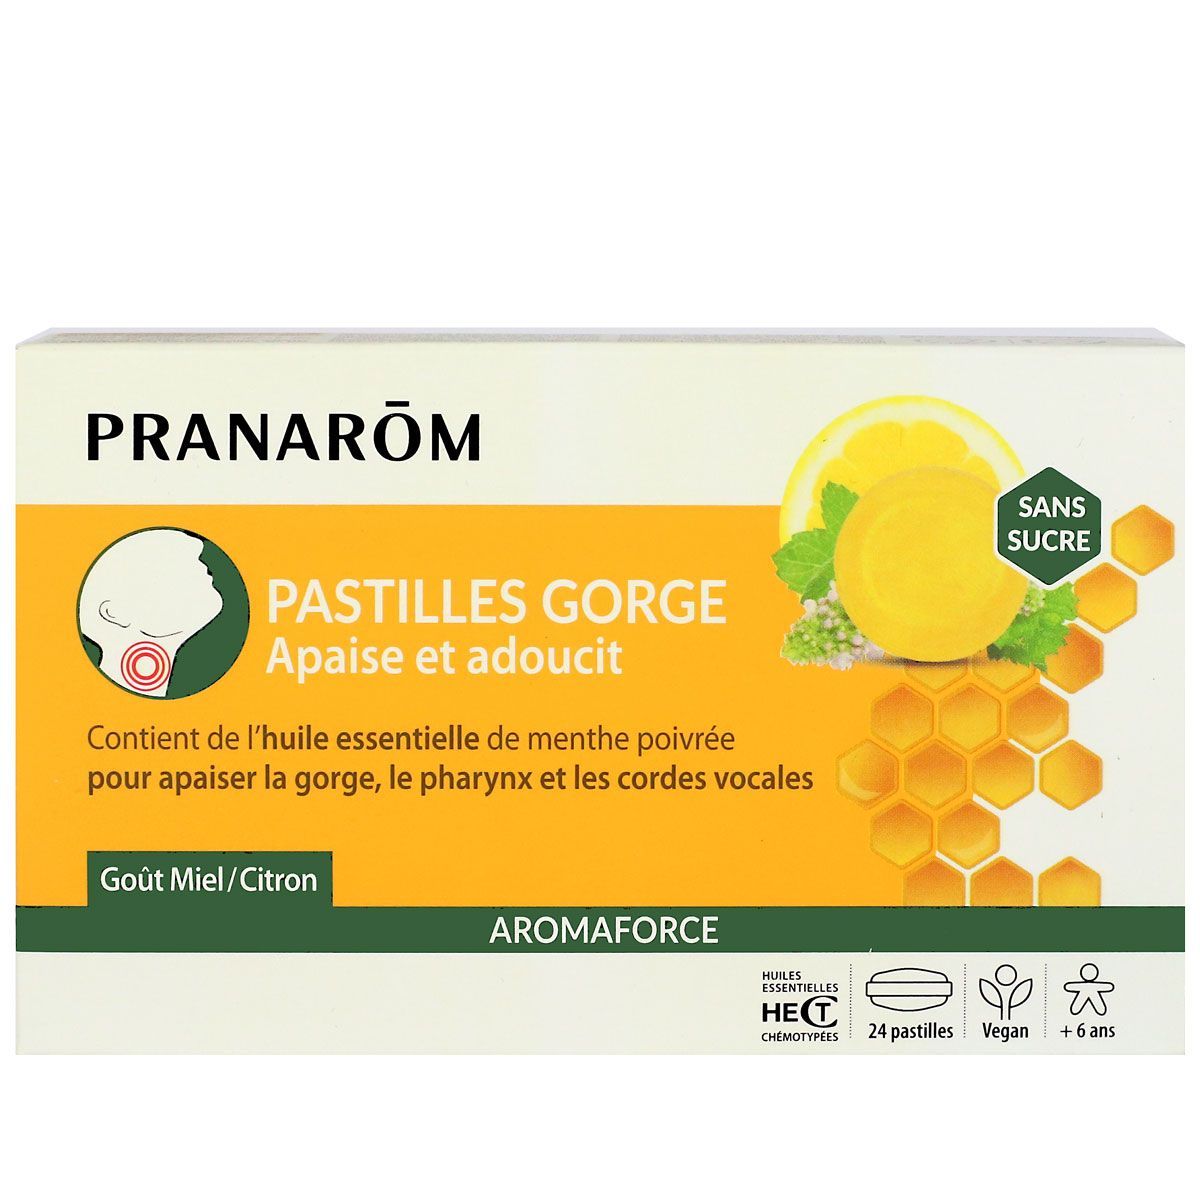 Aromaforce Pastilles Gorge Miel Citron de Pranarôm